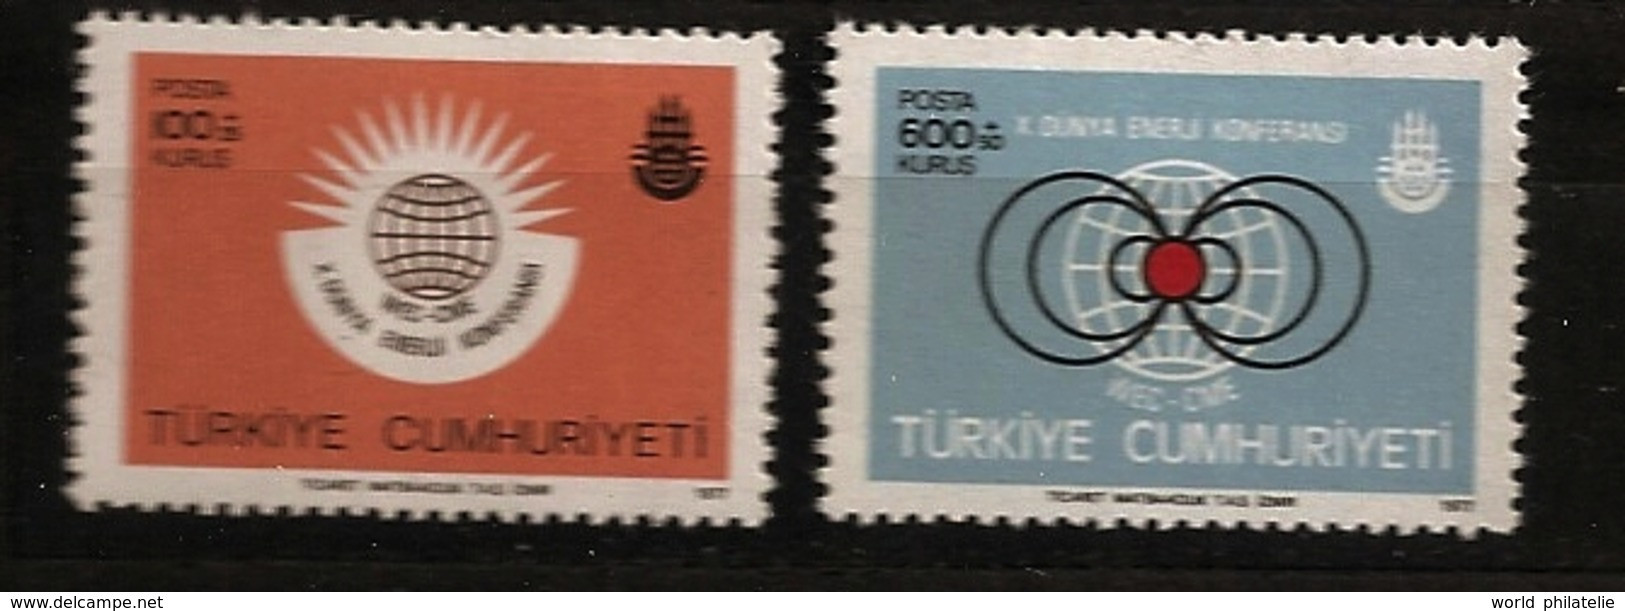 Turquie Türkiye 1977 N° 2198 / 9 ** Energie, Conférence Mondiale, Atome, Nucléaire, Gaz, Pétrole, Charbon, Electricité - Nuovi